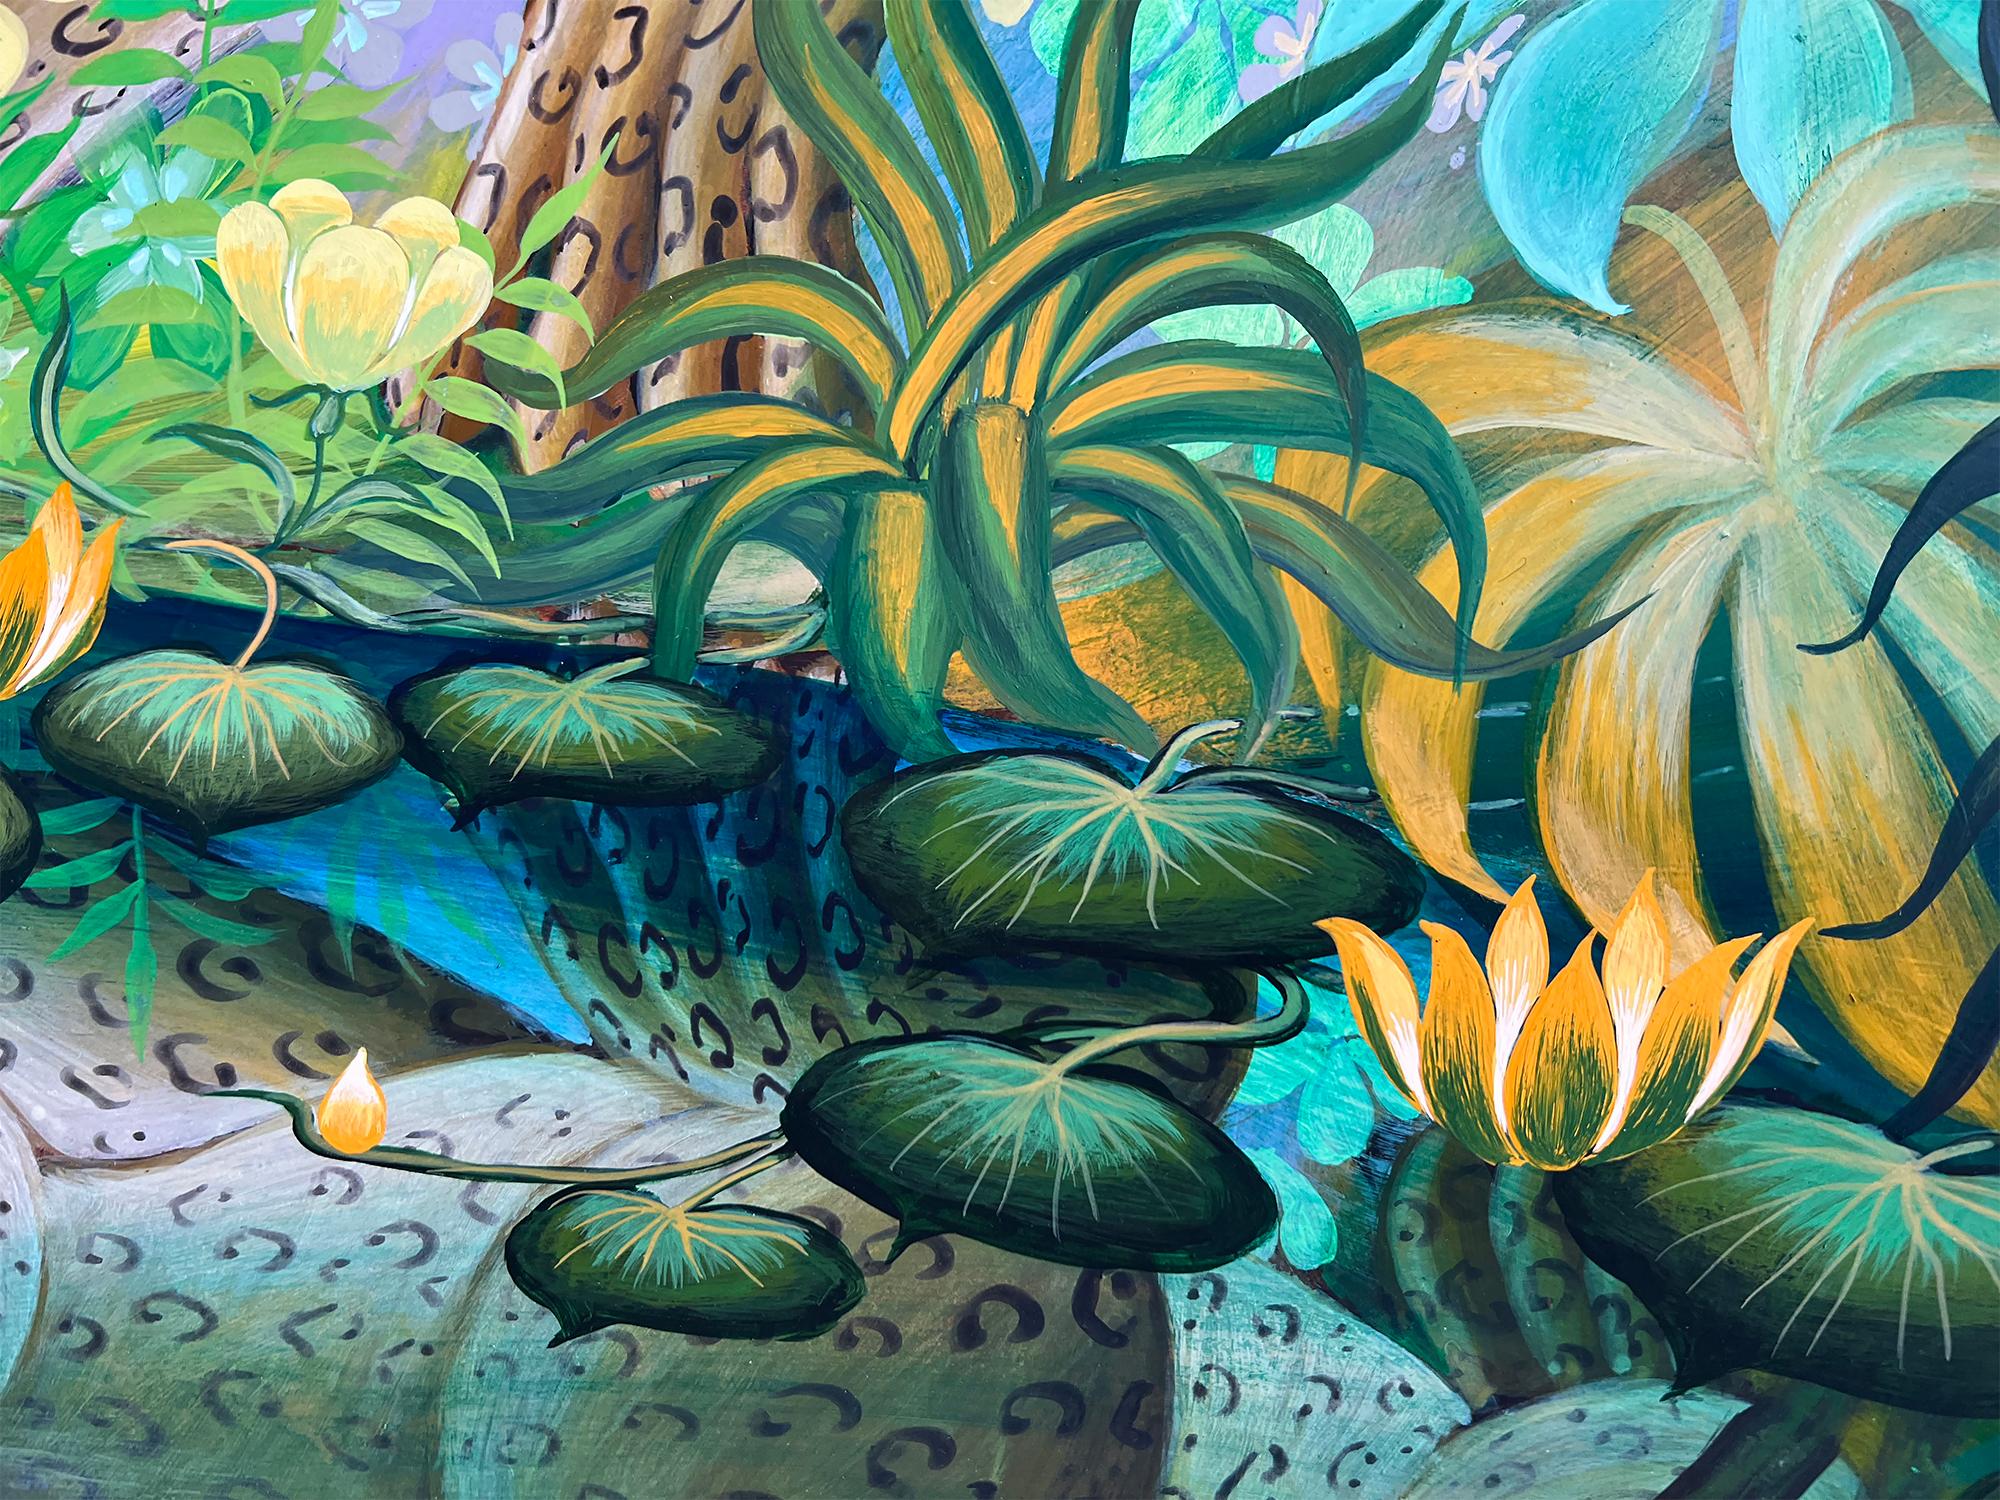 Deux léopards dans un bassin de réflexion  dans un jardin tropical fantastique - Art naïf - Outsider Art Painting par Gustavo Novoa